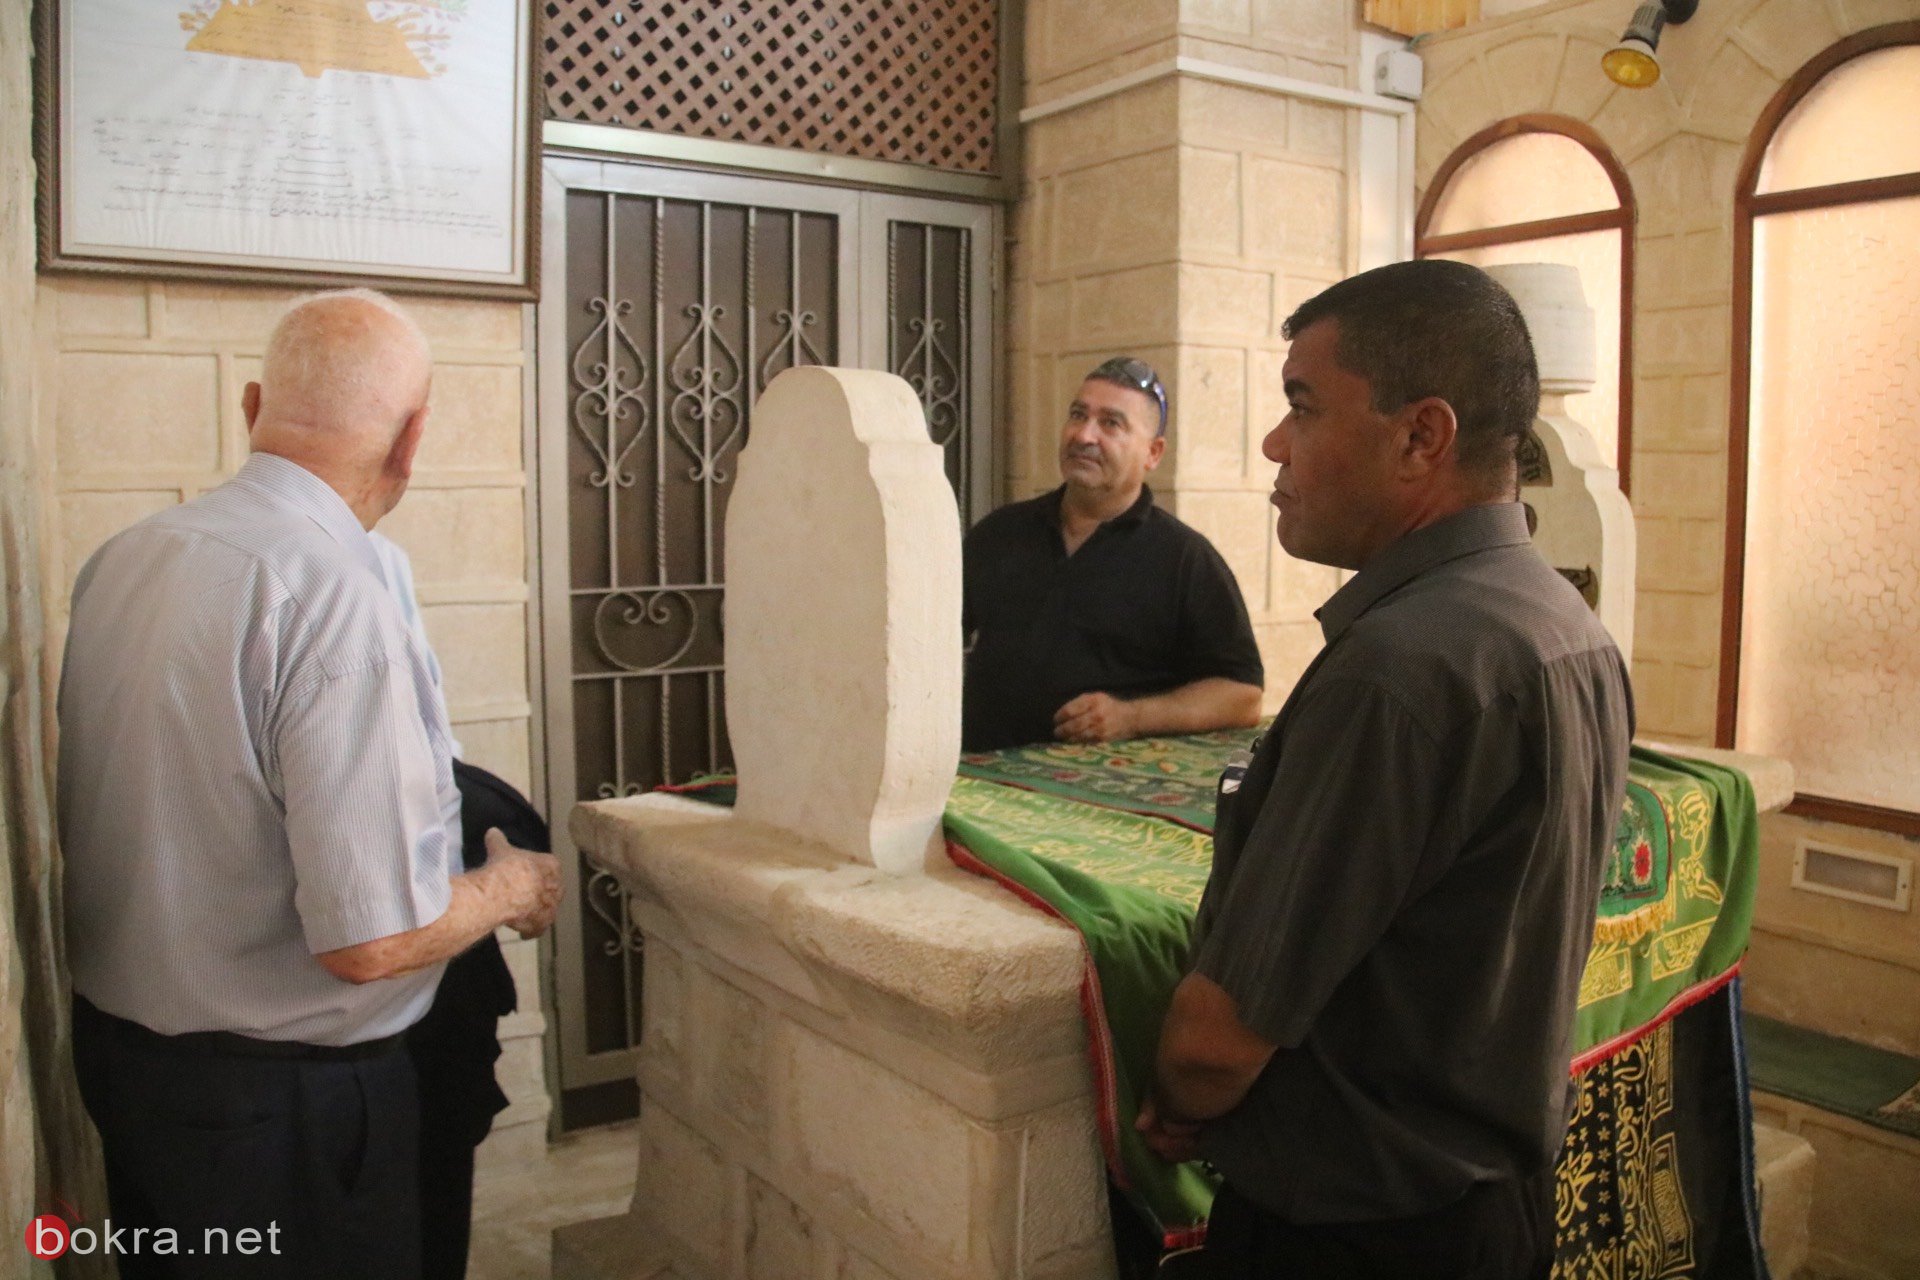 السفير البريطاني الجديد نيل ويچن يزور الناصرة وهذا ما قاله لـ"بُكرا"-23